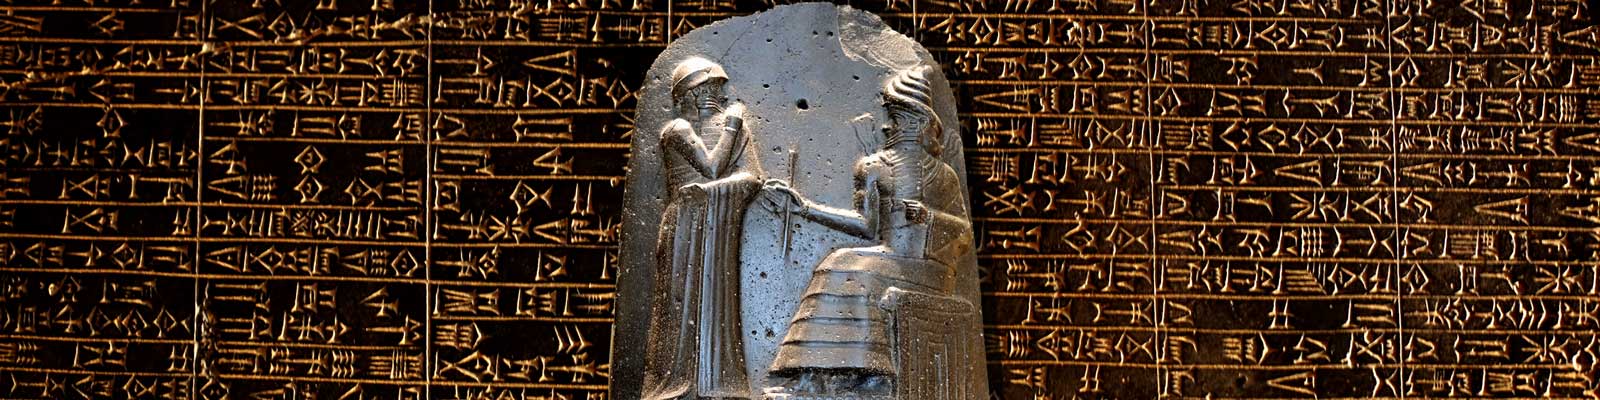 Hammurabi's Code - An Eye For An Eye - mrdowling.com